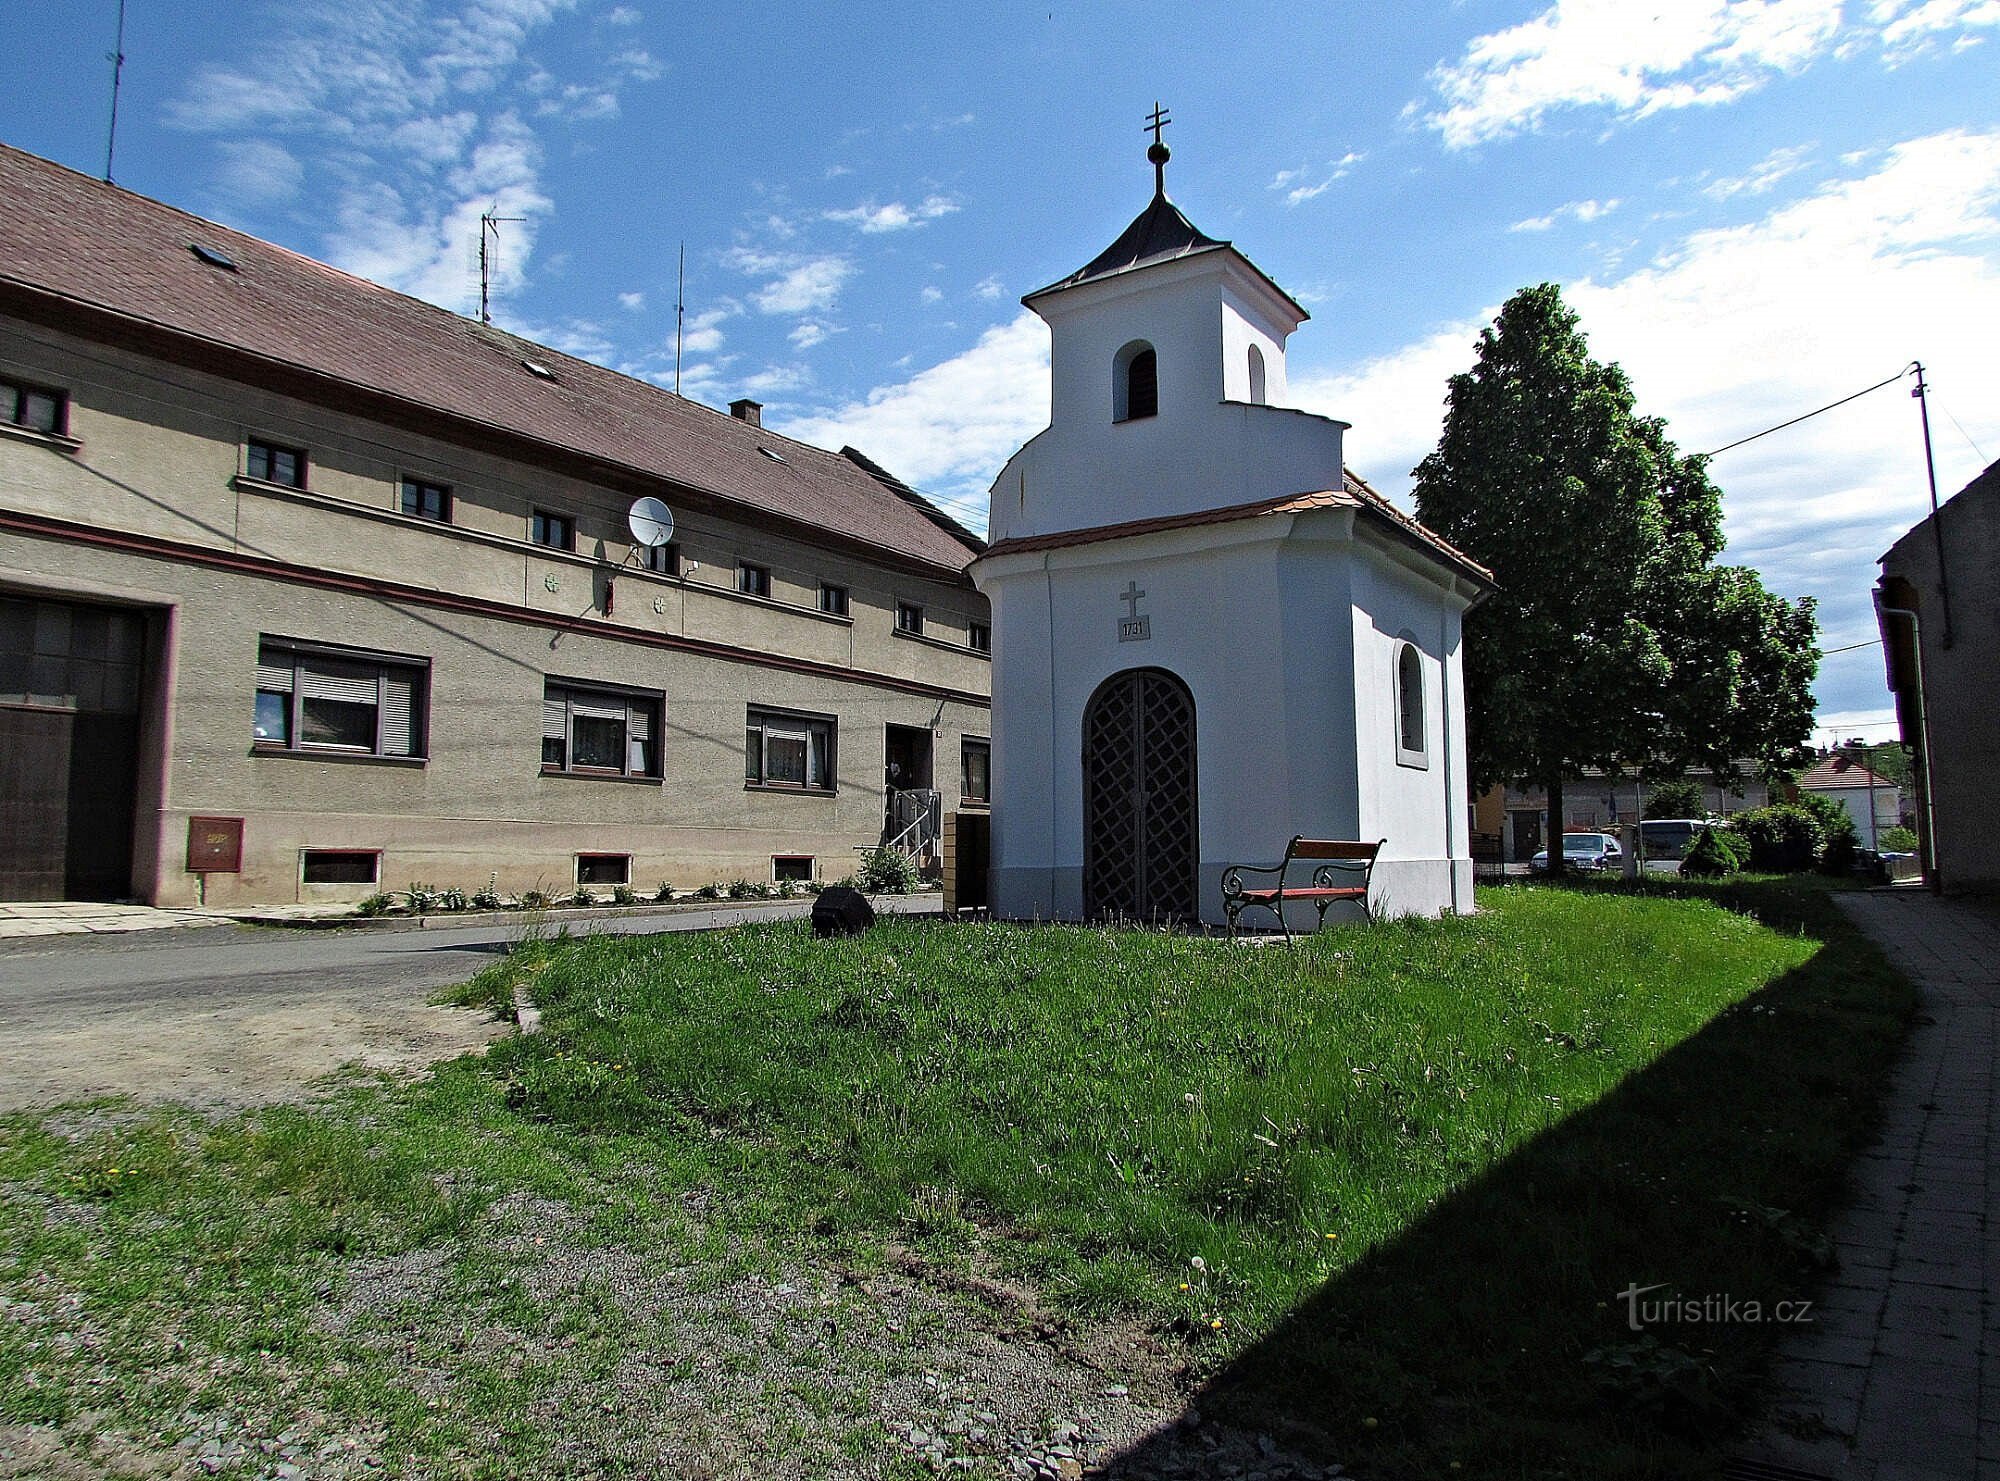 Dobrčice - monumente ale satului